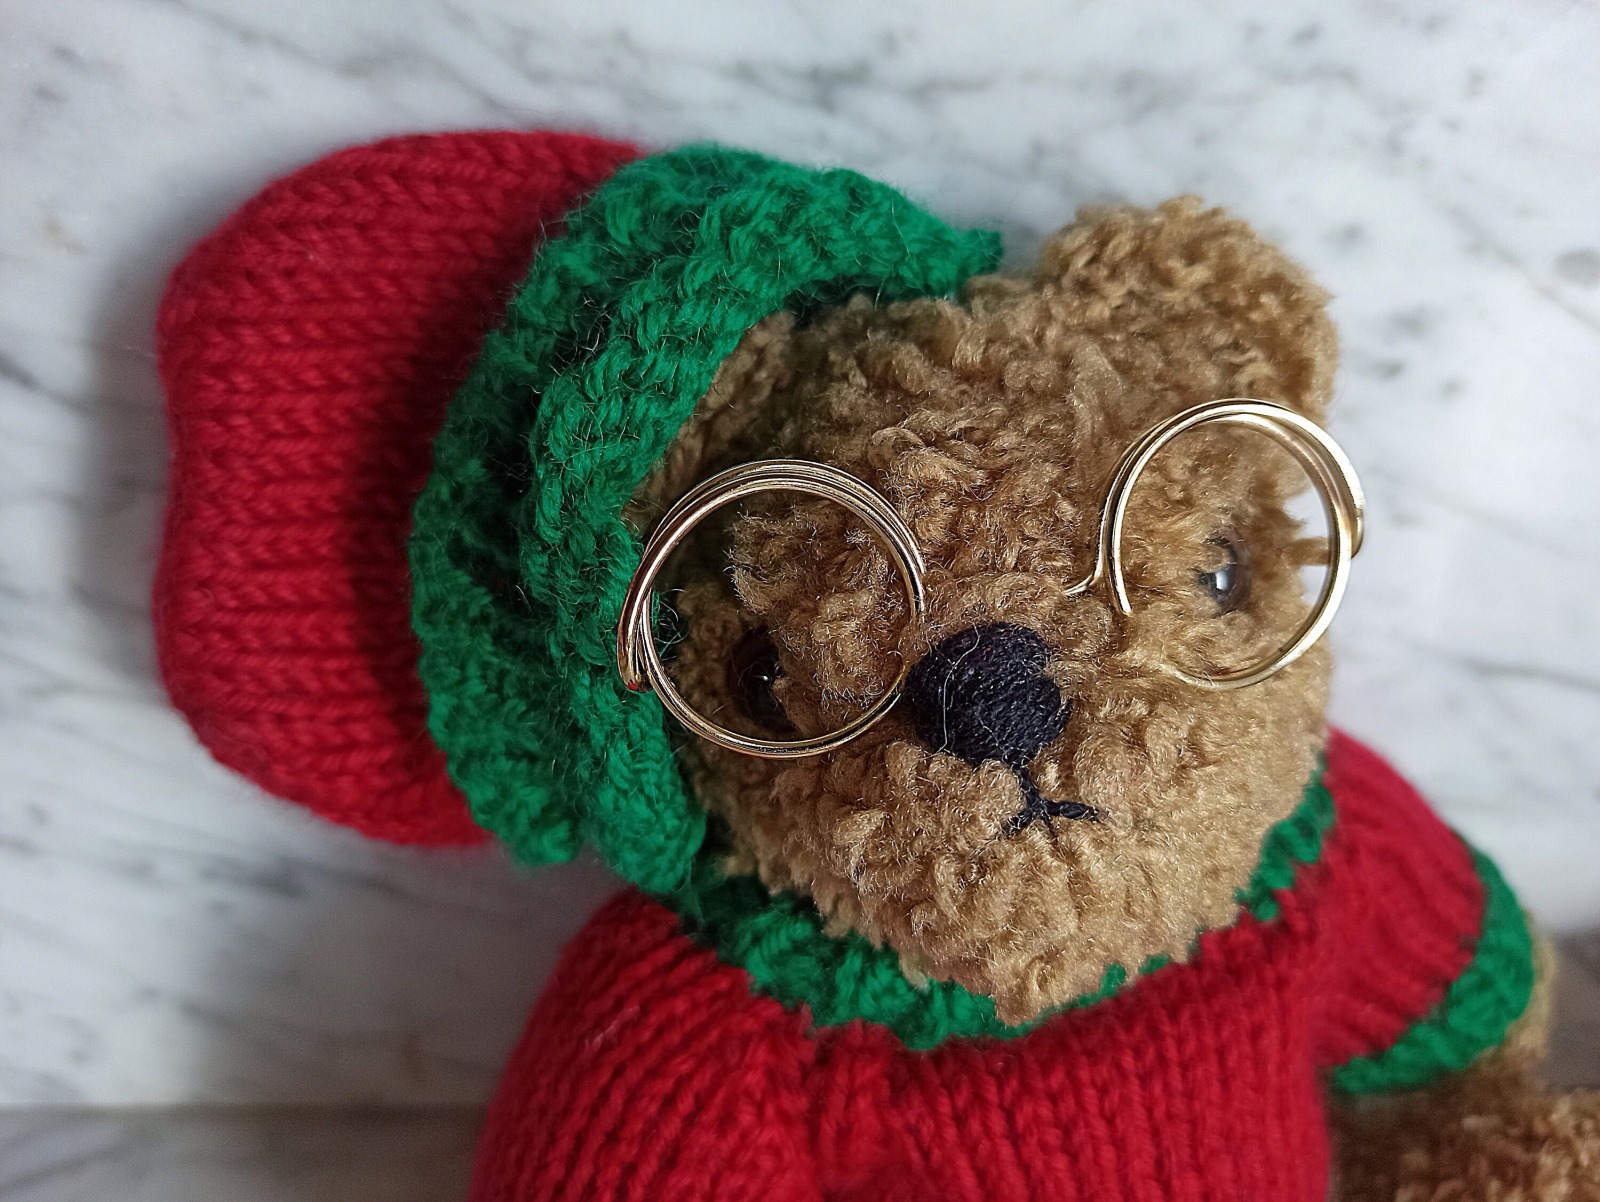 Teddy / 90er Jahre Sammlerteddy / Teddybär mit Brille / teddy Bär / Bärensammlung 5